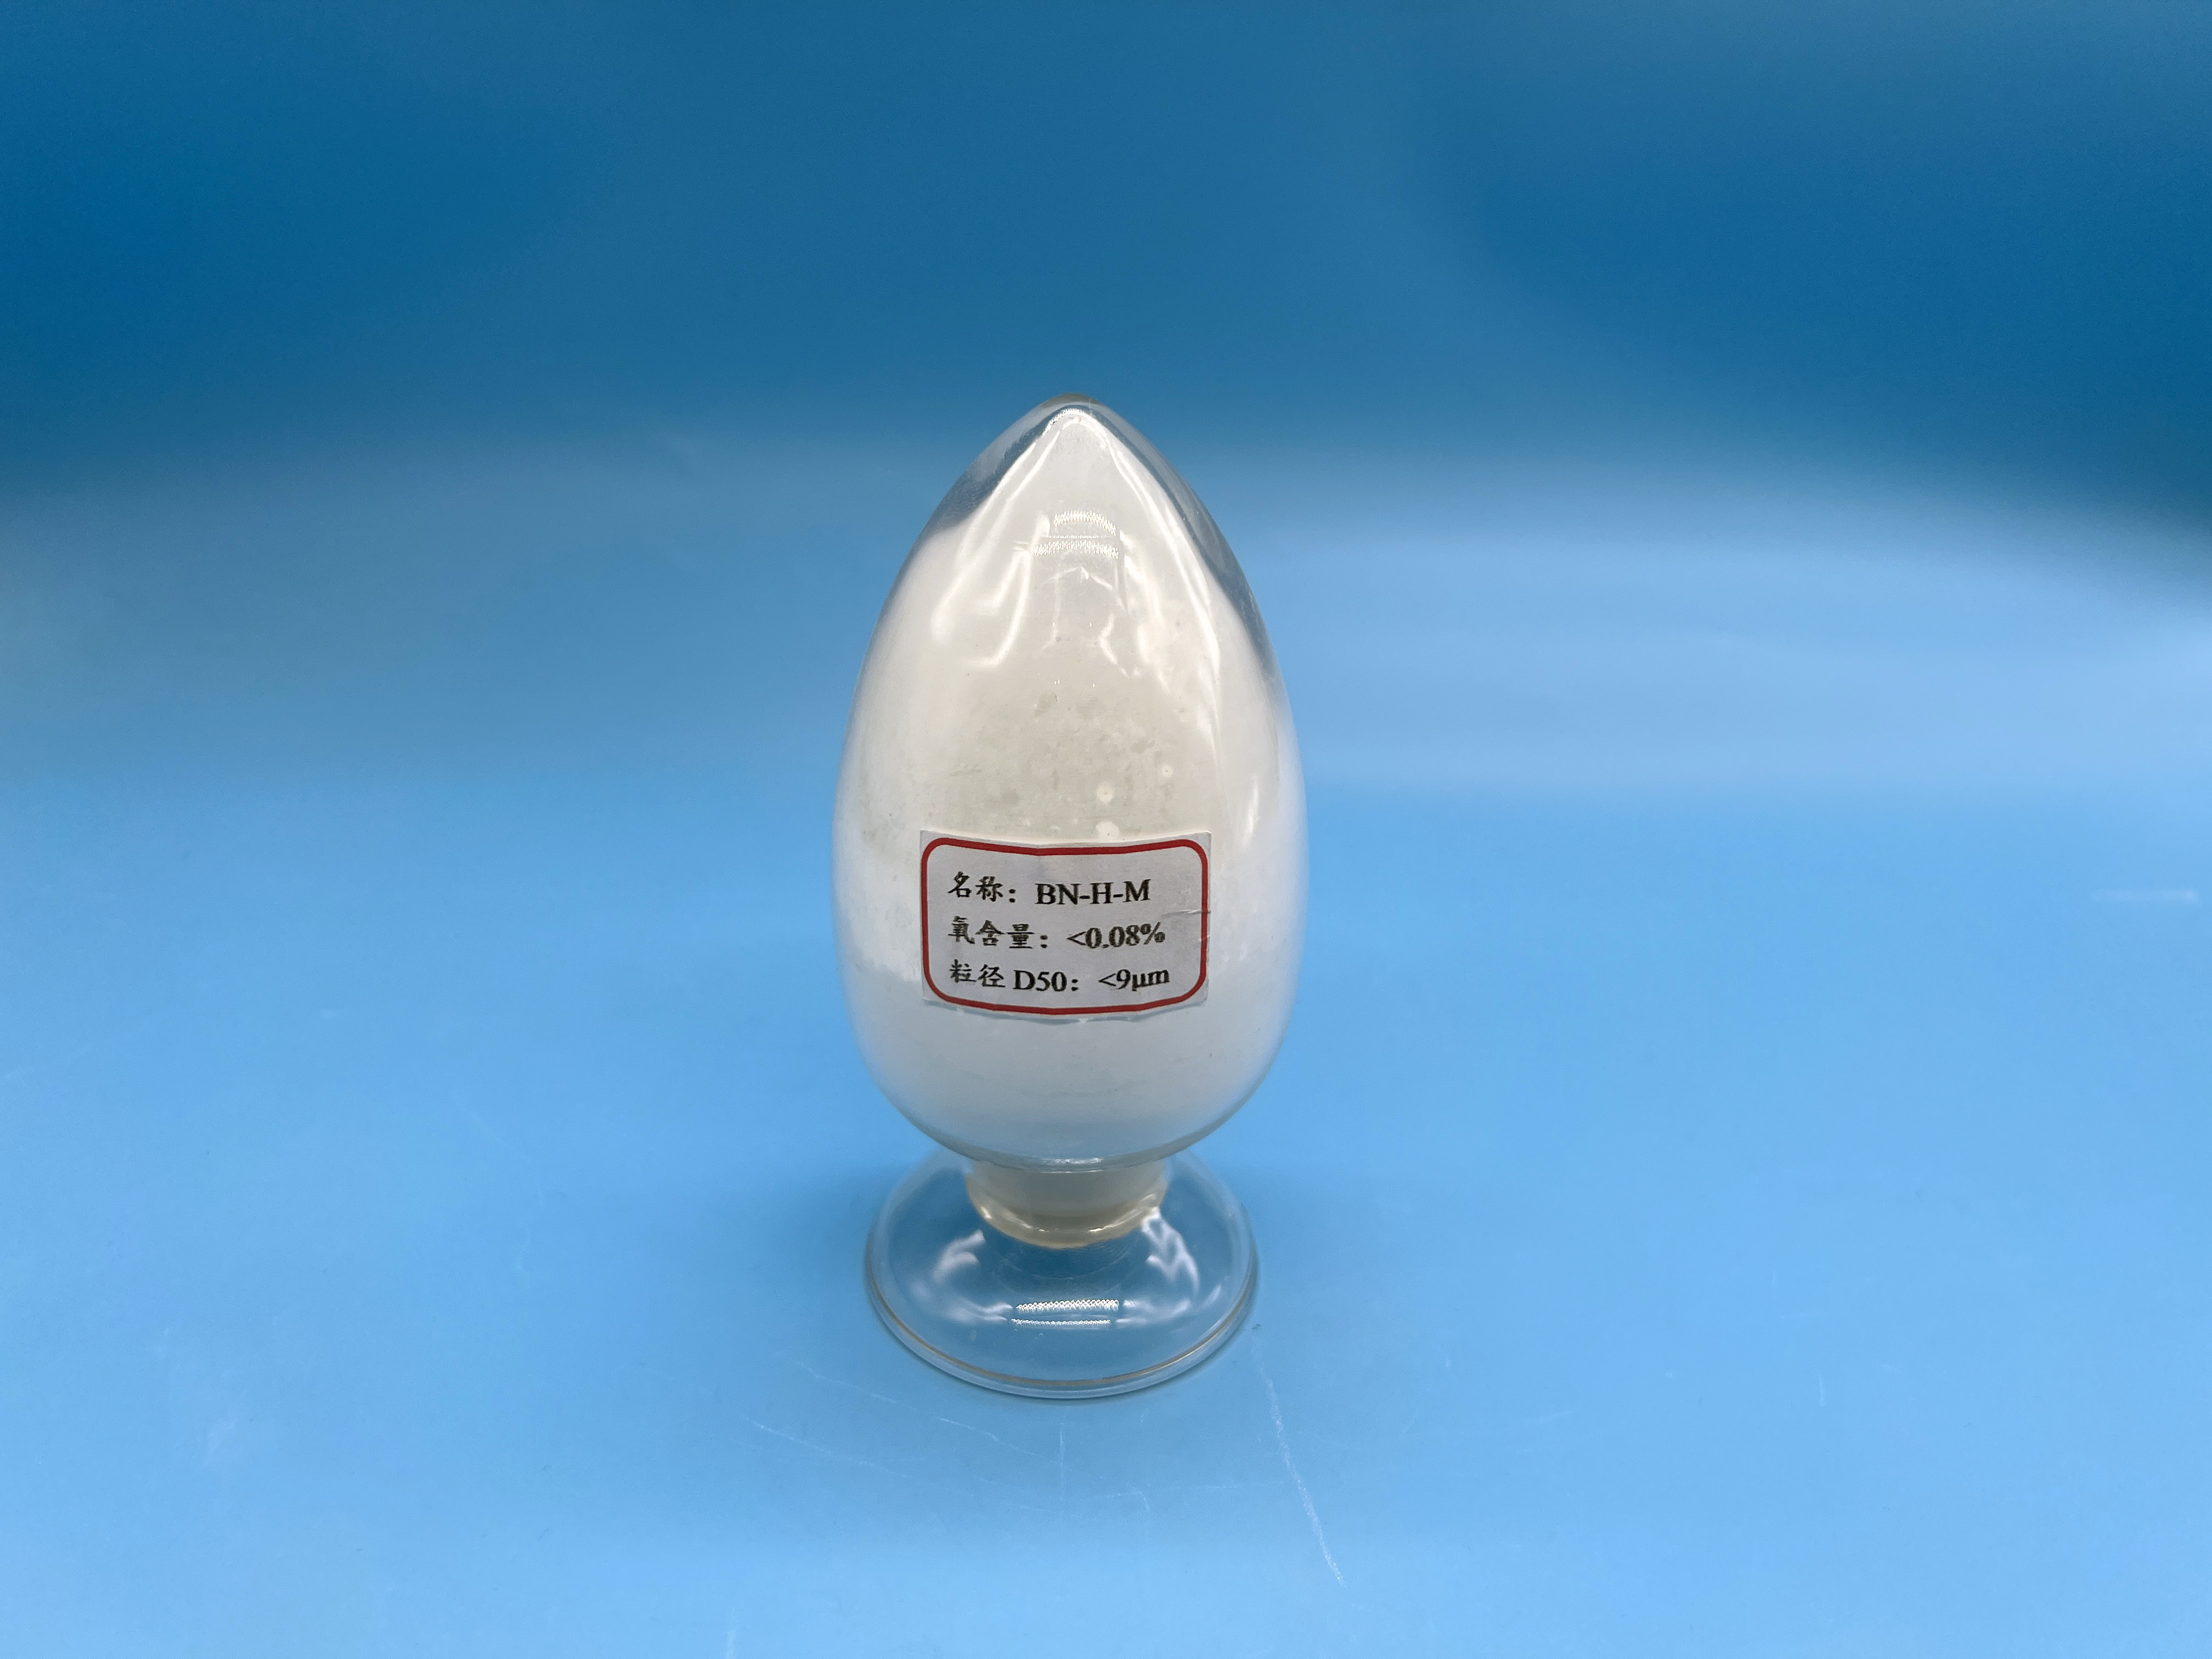 Boron nitride ceramic fixture